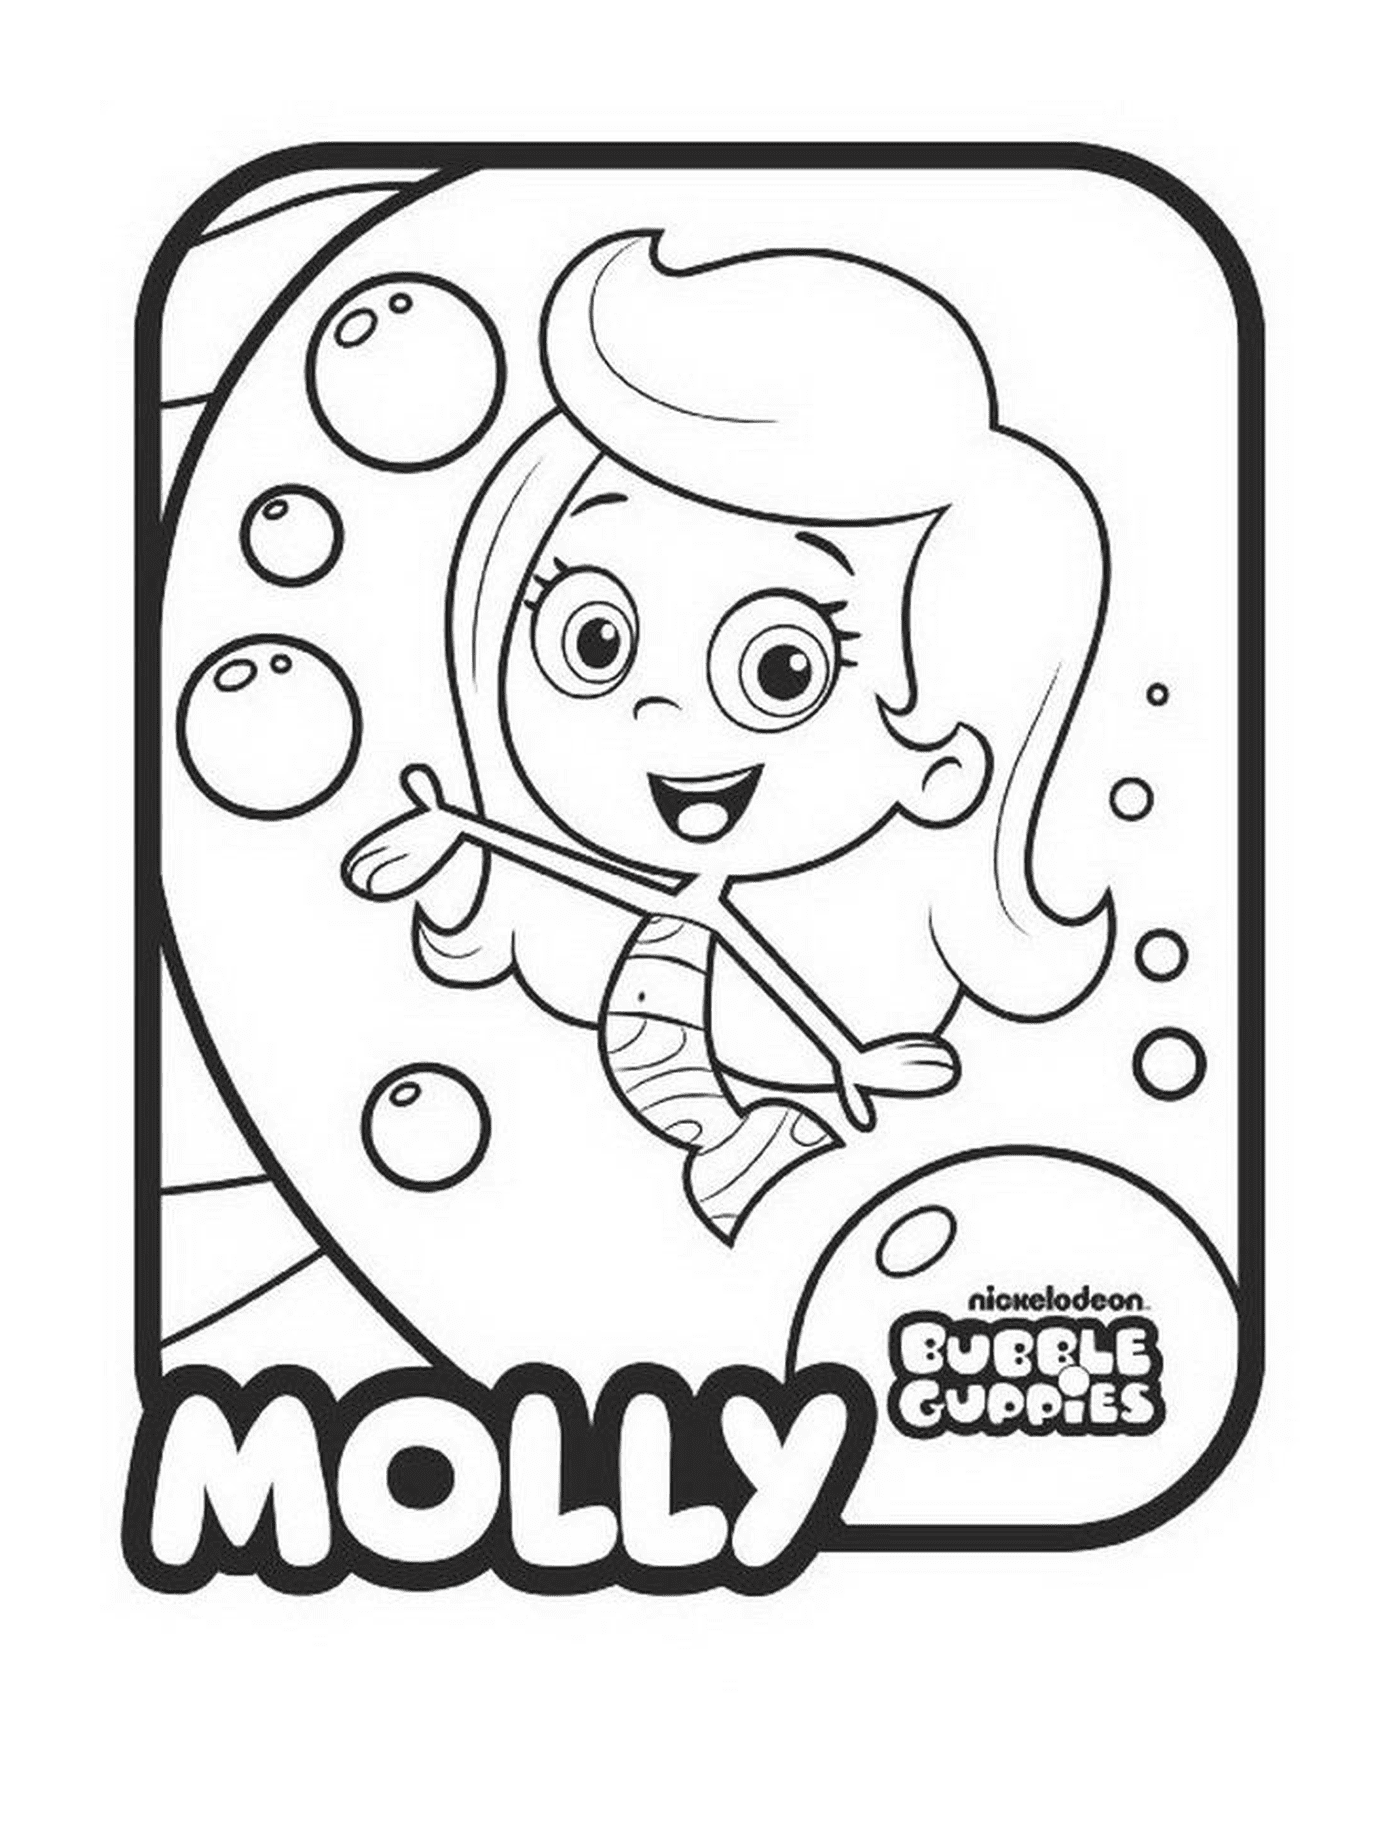  Molly dei Guppi Bubble 